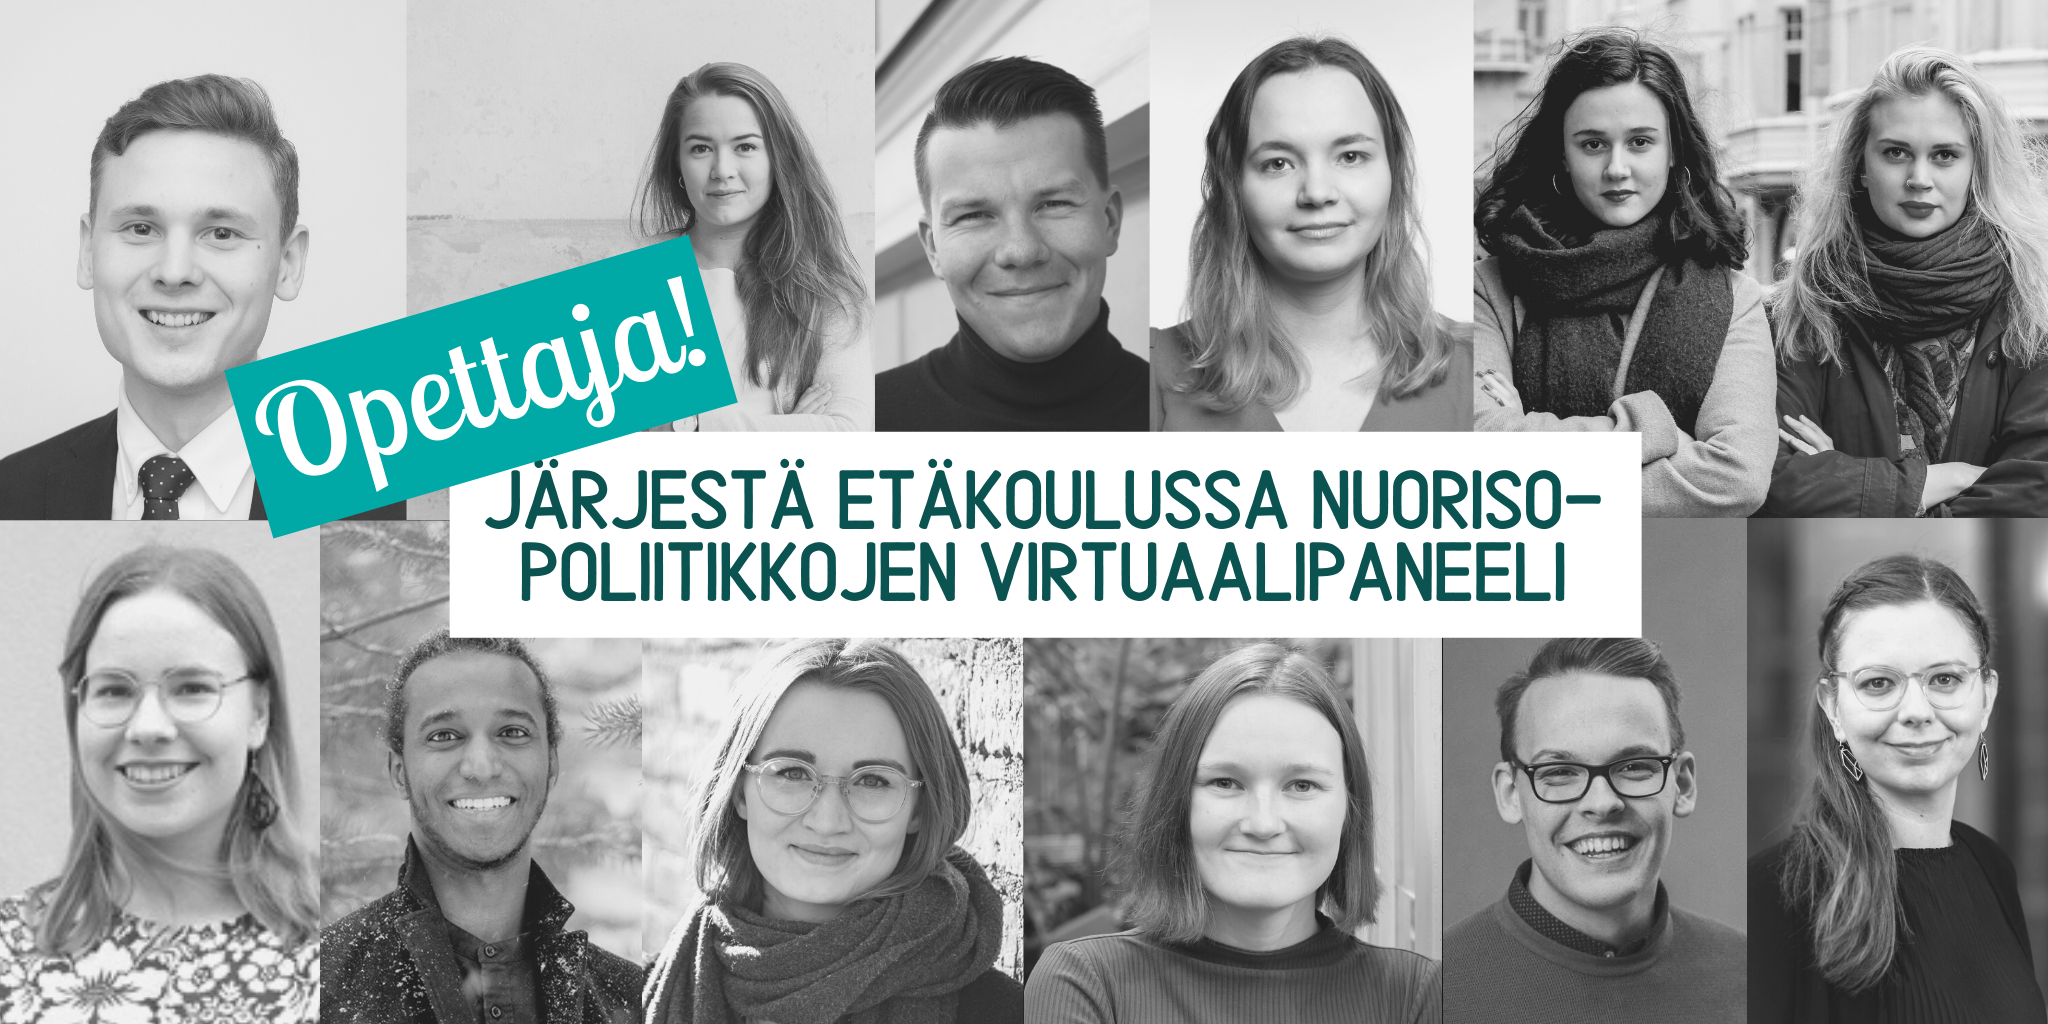 Read more about the article Opettaja, järjestä etäkoulussa nuorisopoliitikkojen virtuaalipaneeli!